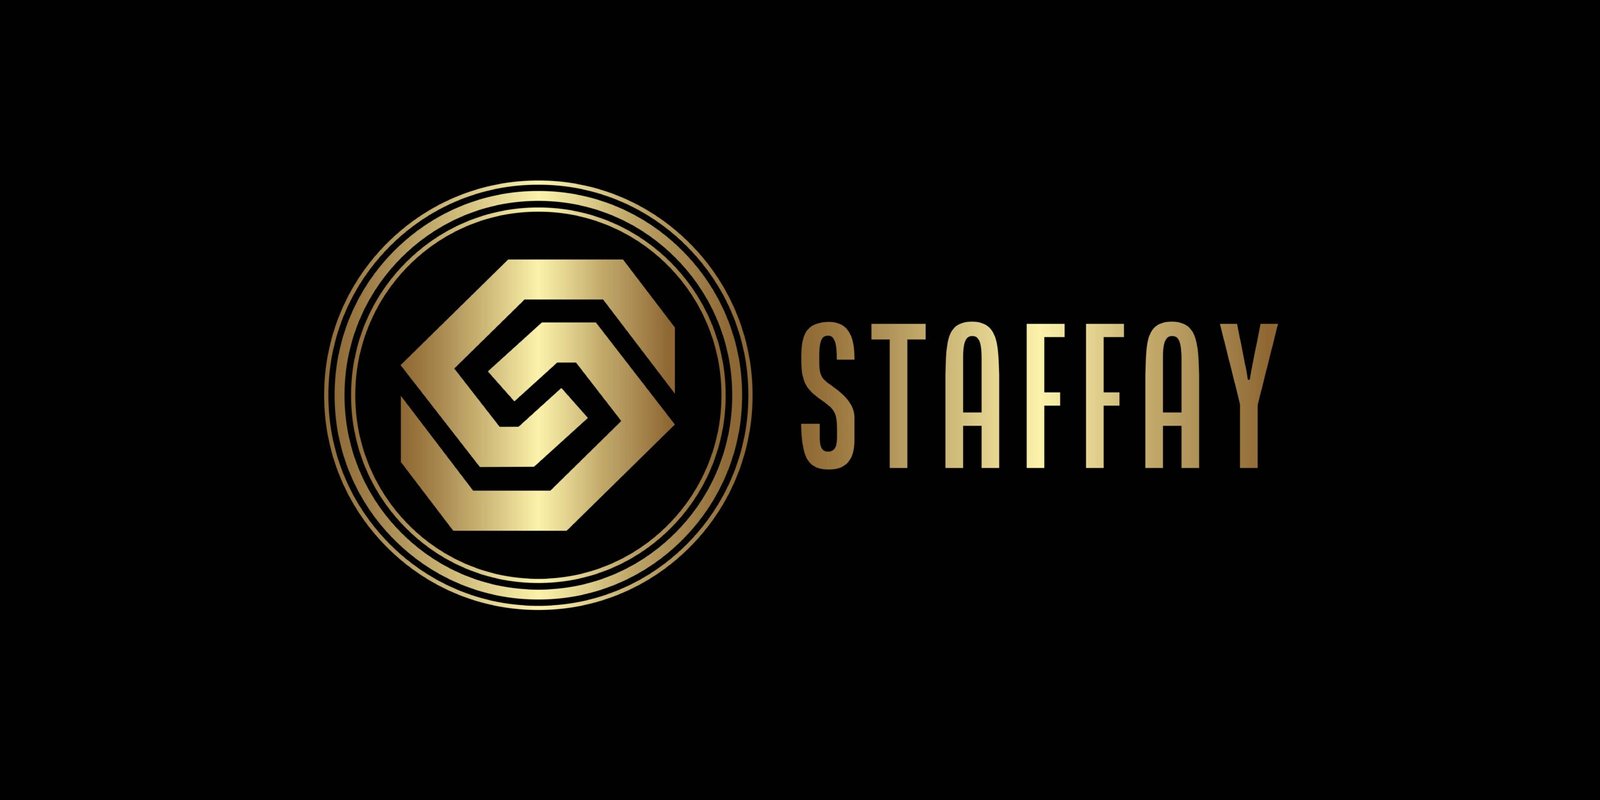 Staffay- Staffing Agency